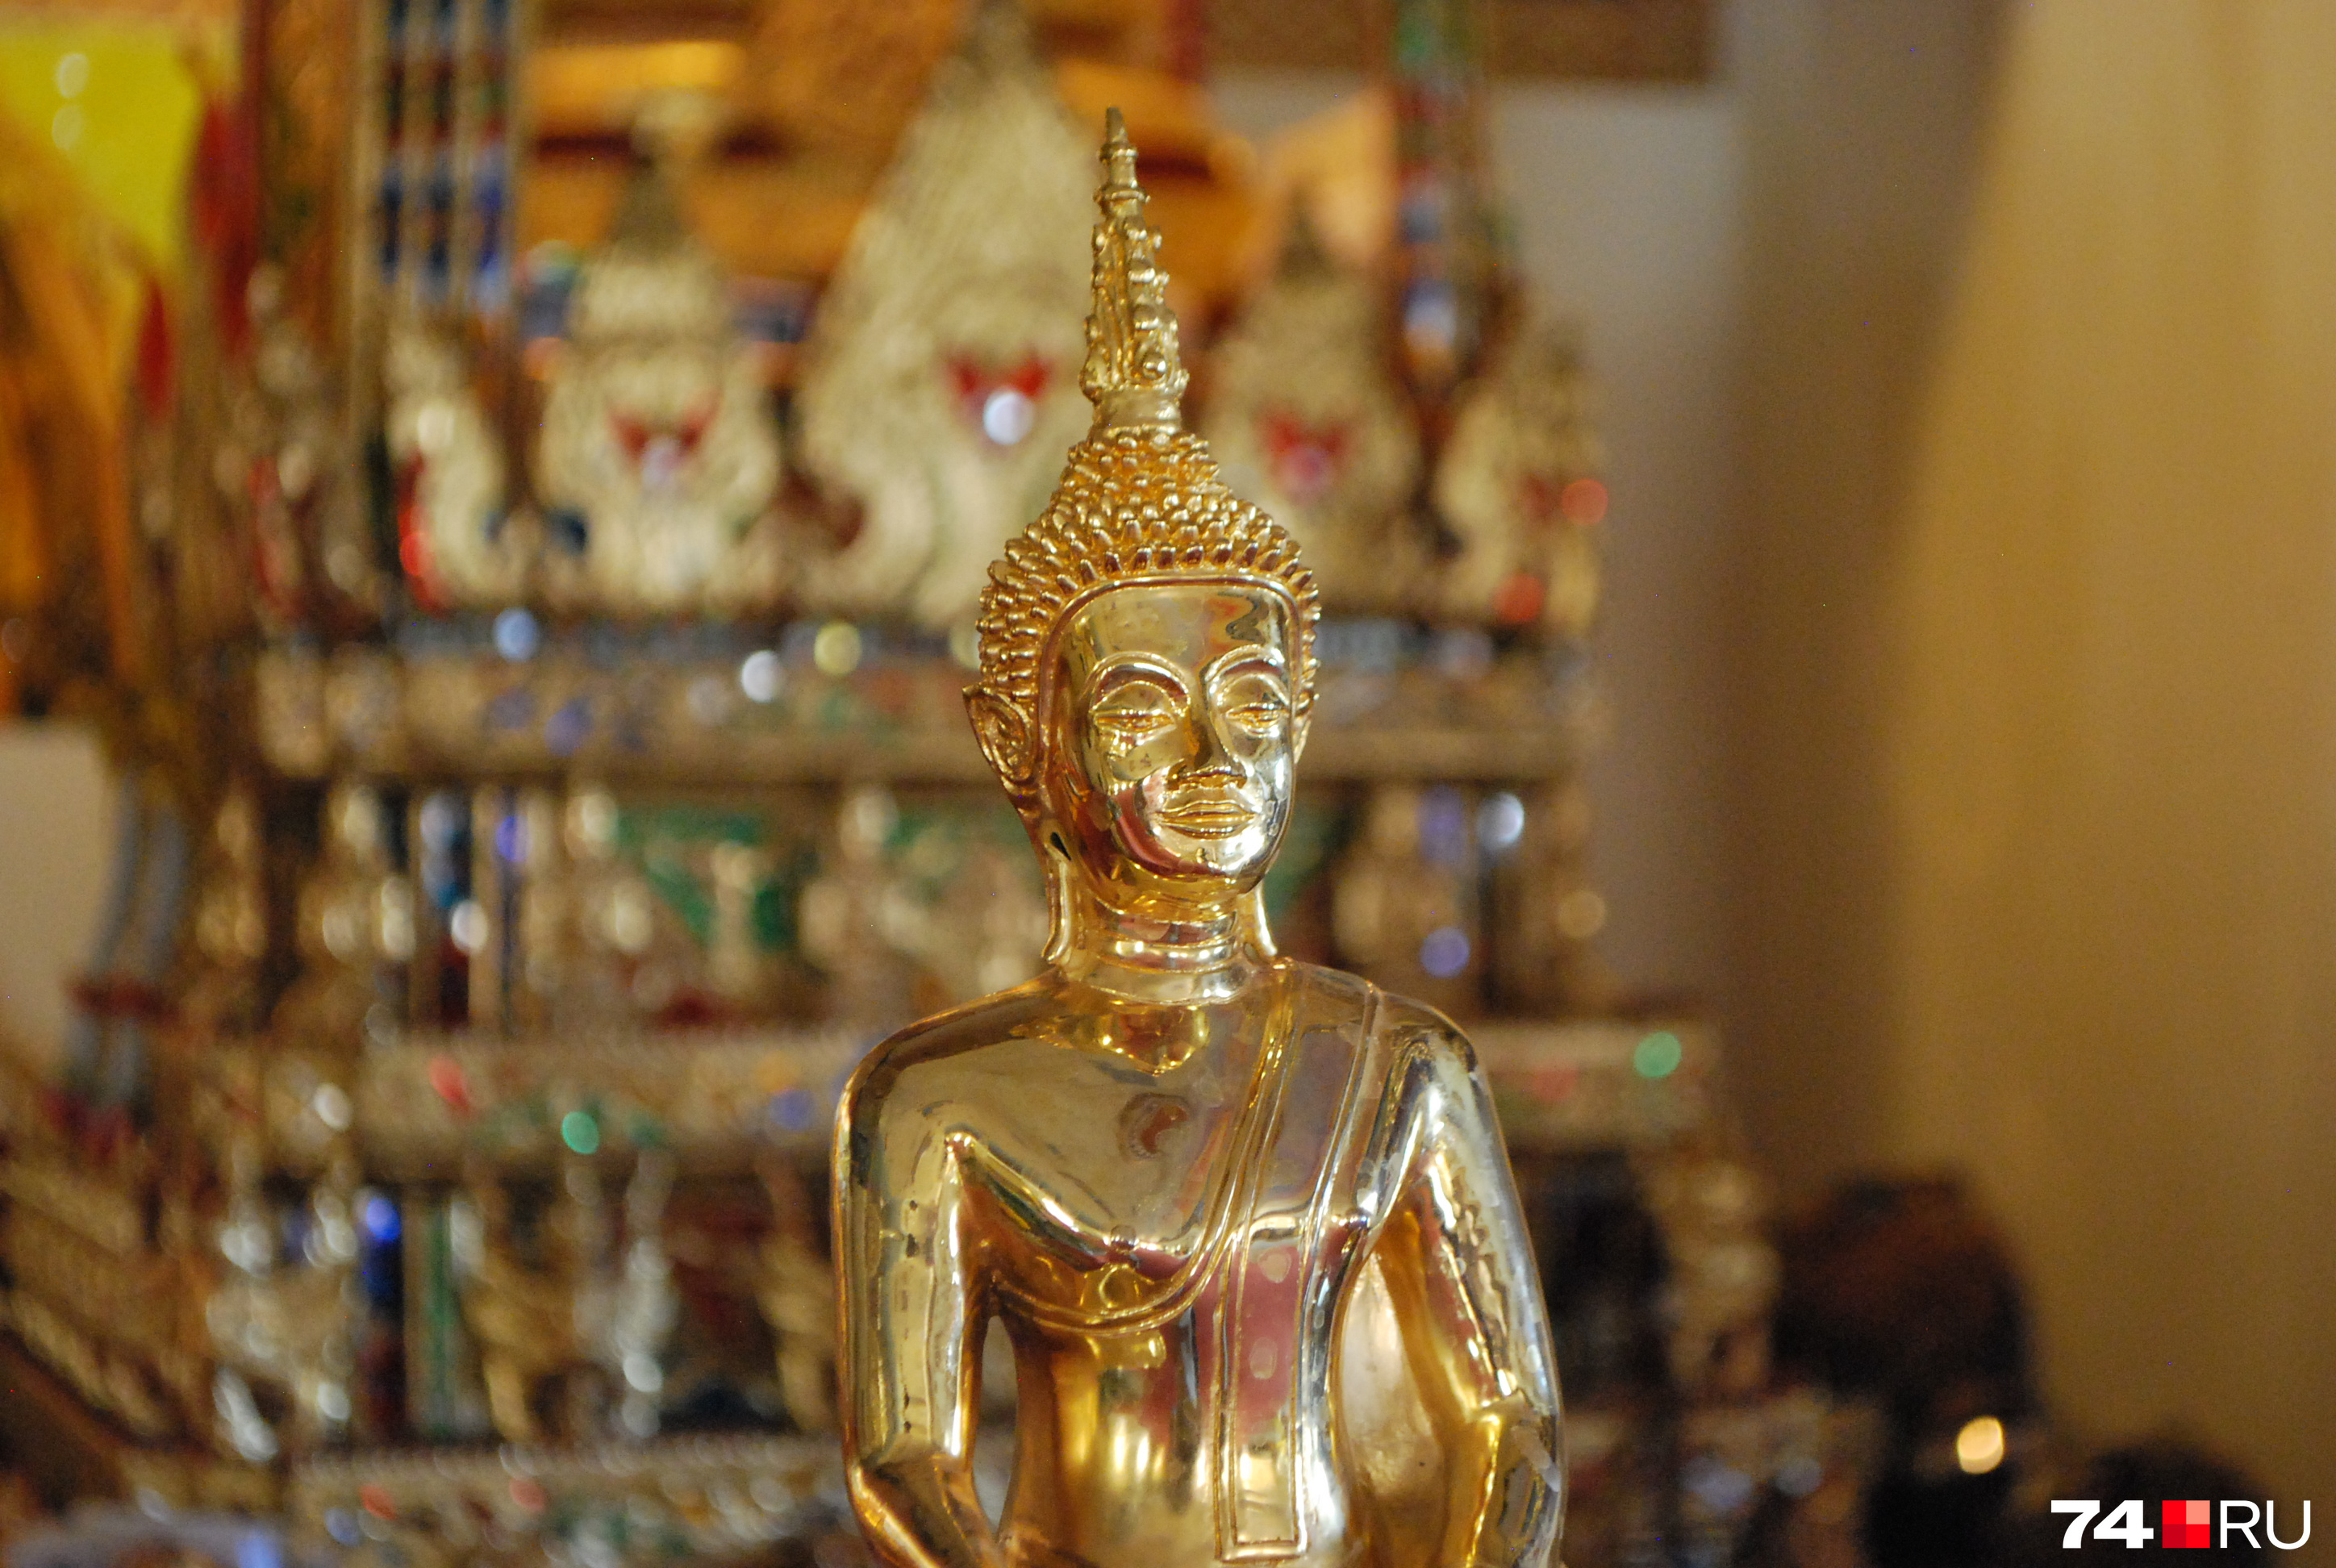 Буддисты активно используют для своих медитаций современные технологии